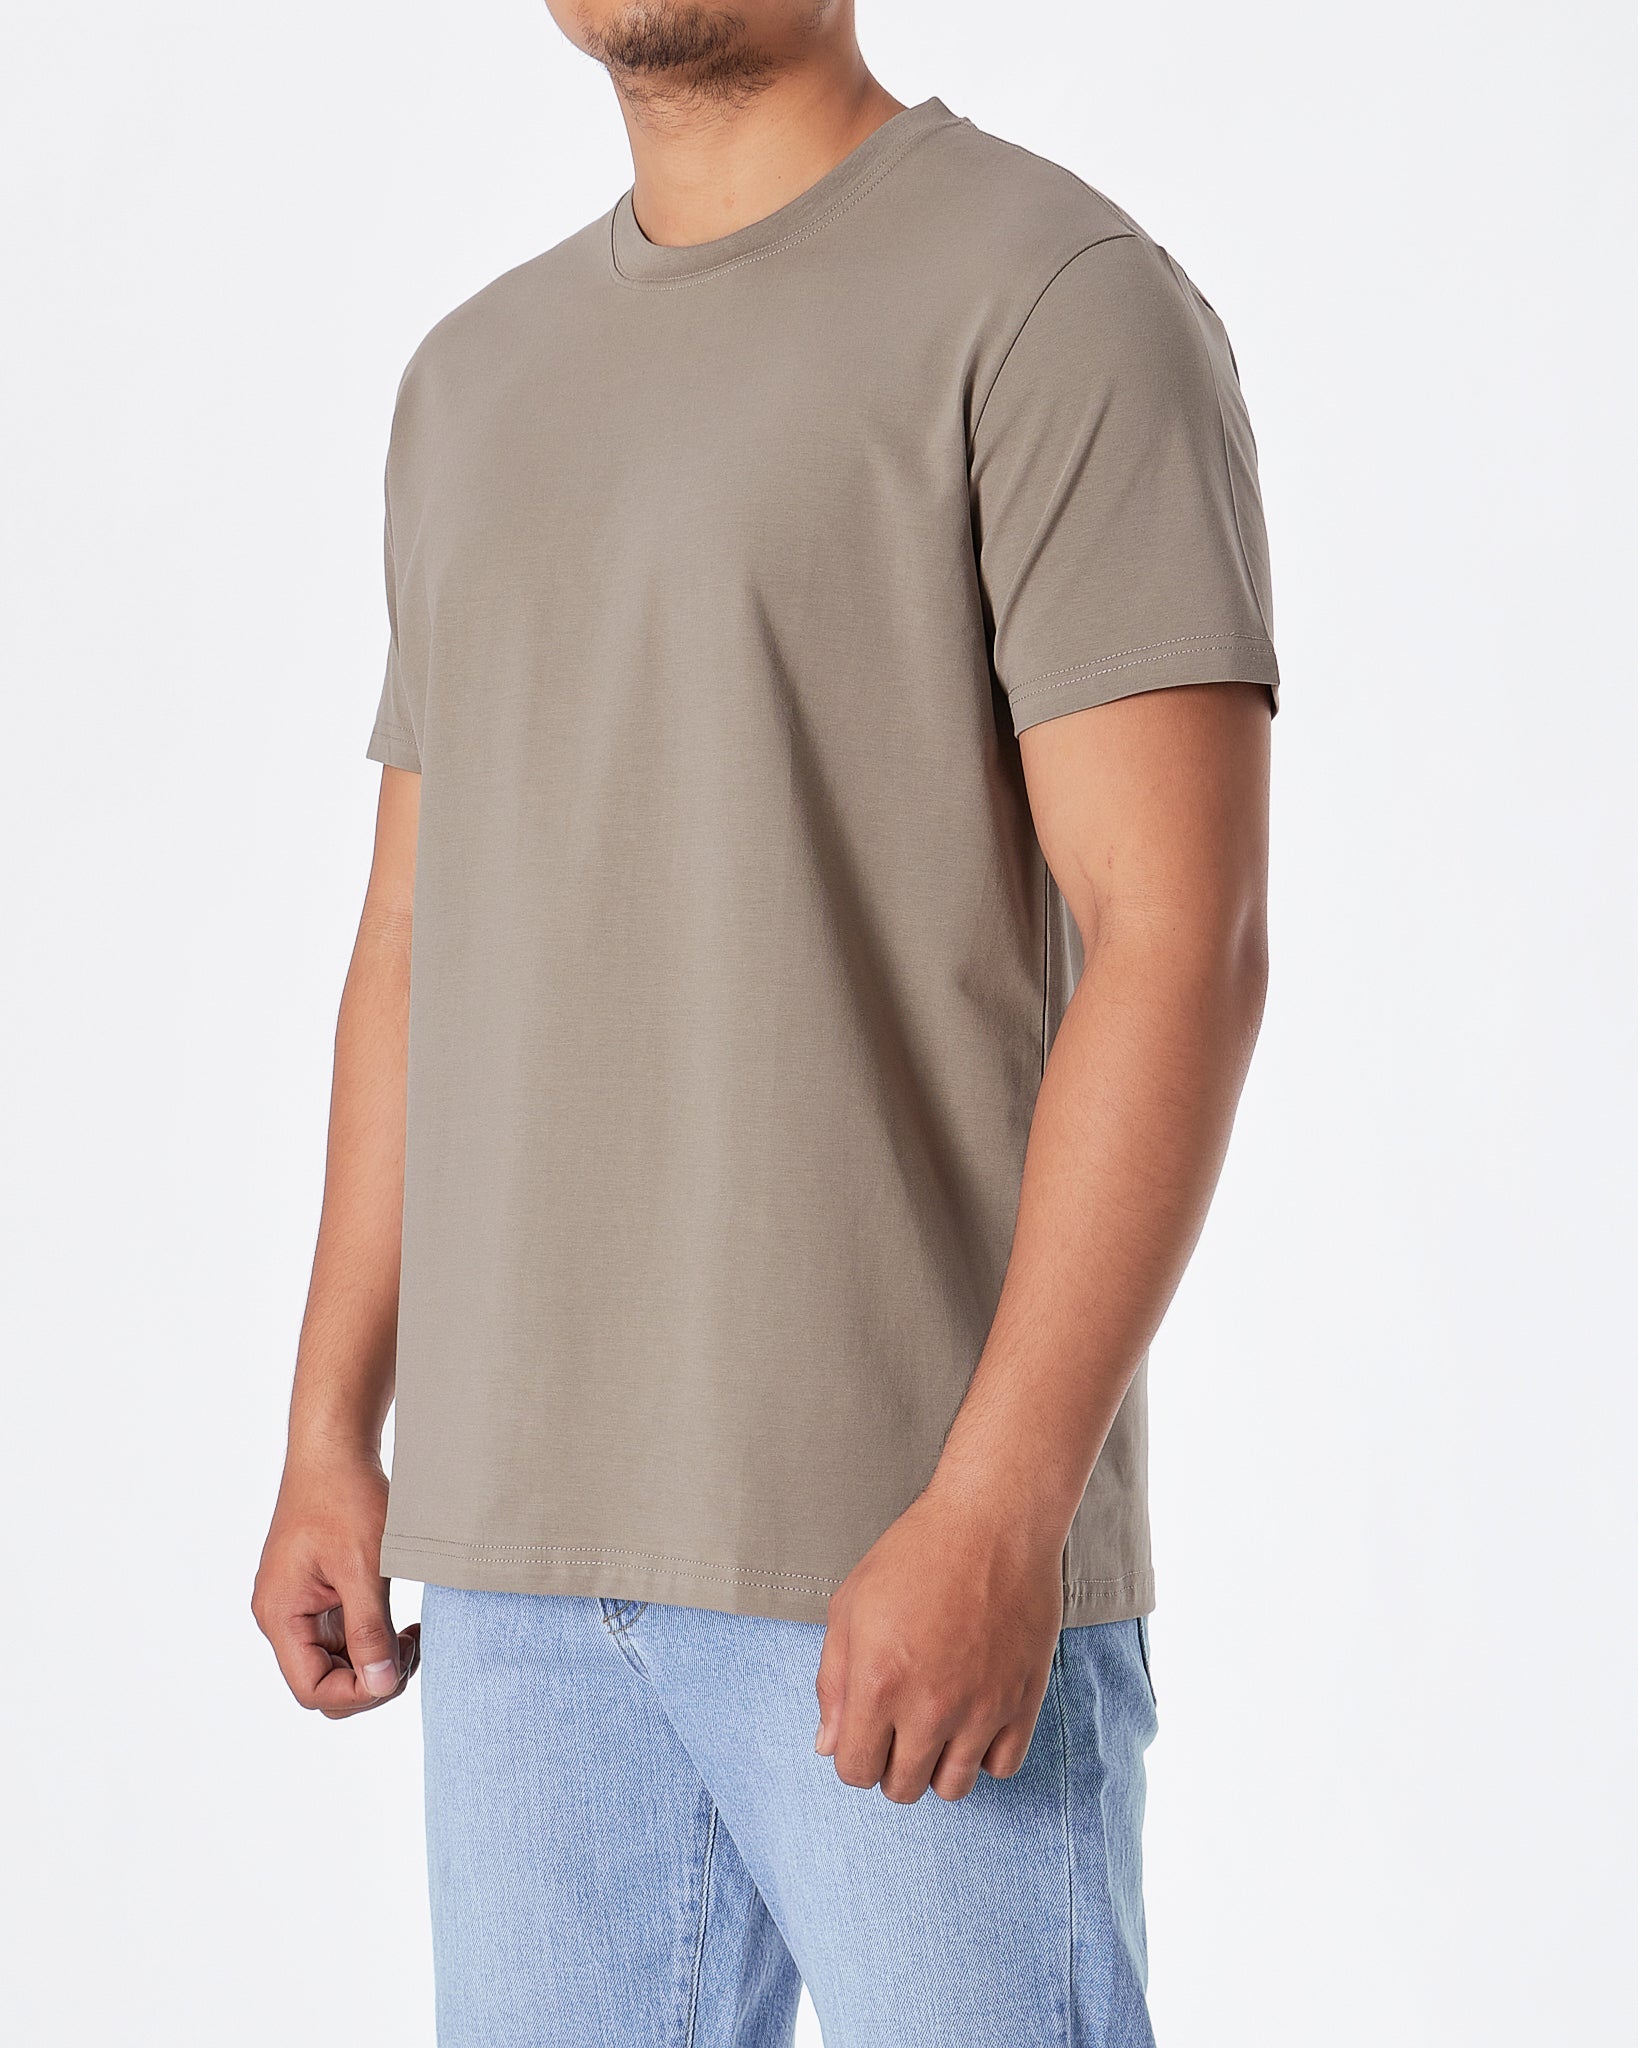 MOI OUTFIT-ABA Plain Color Men Grey T-Shirt 14.90